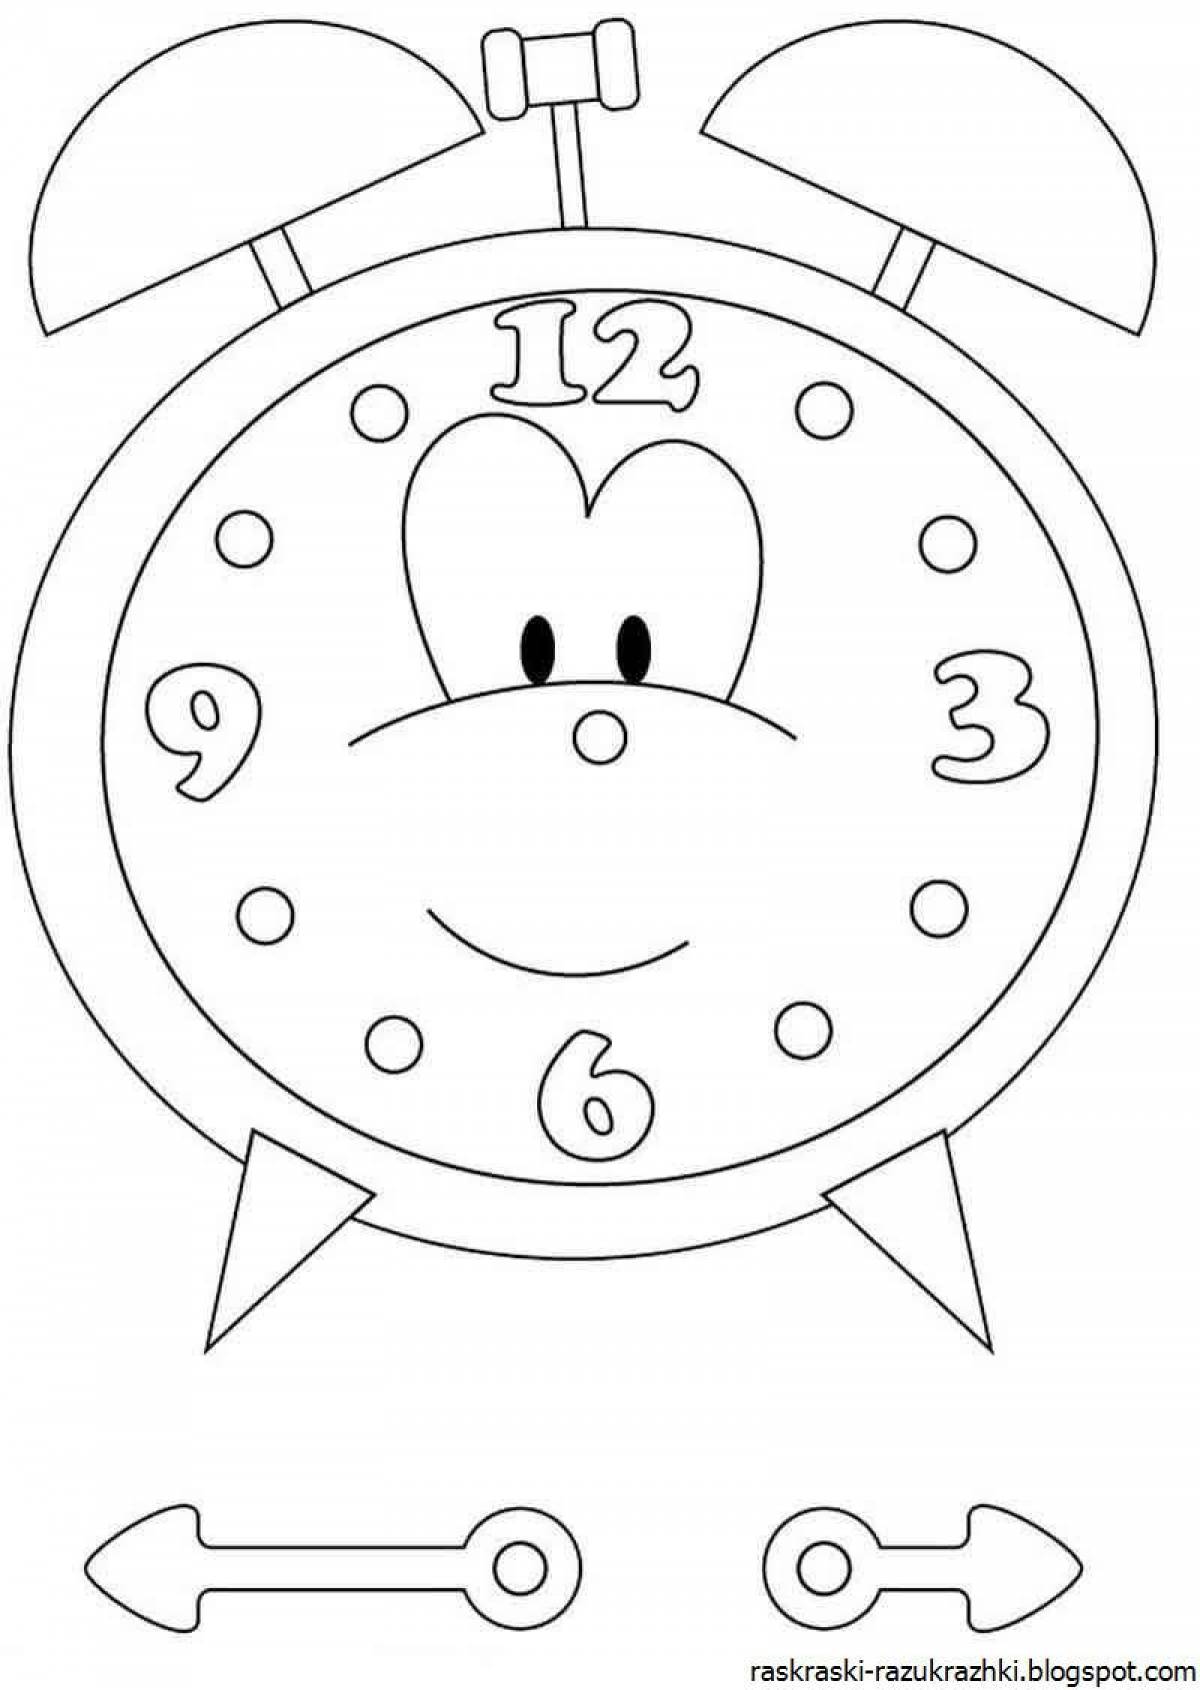 Раскраски часов для детей. Часы раскраска для детей. Часики раскраска. Часы раскраска для малышей. Будильник раскраска для детей.